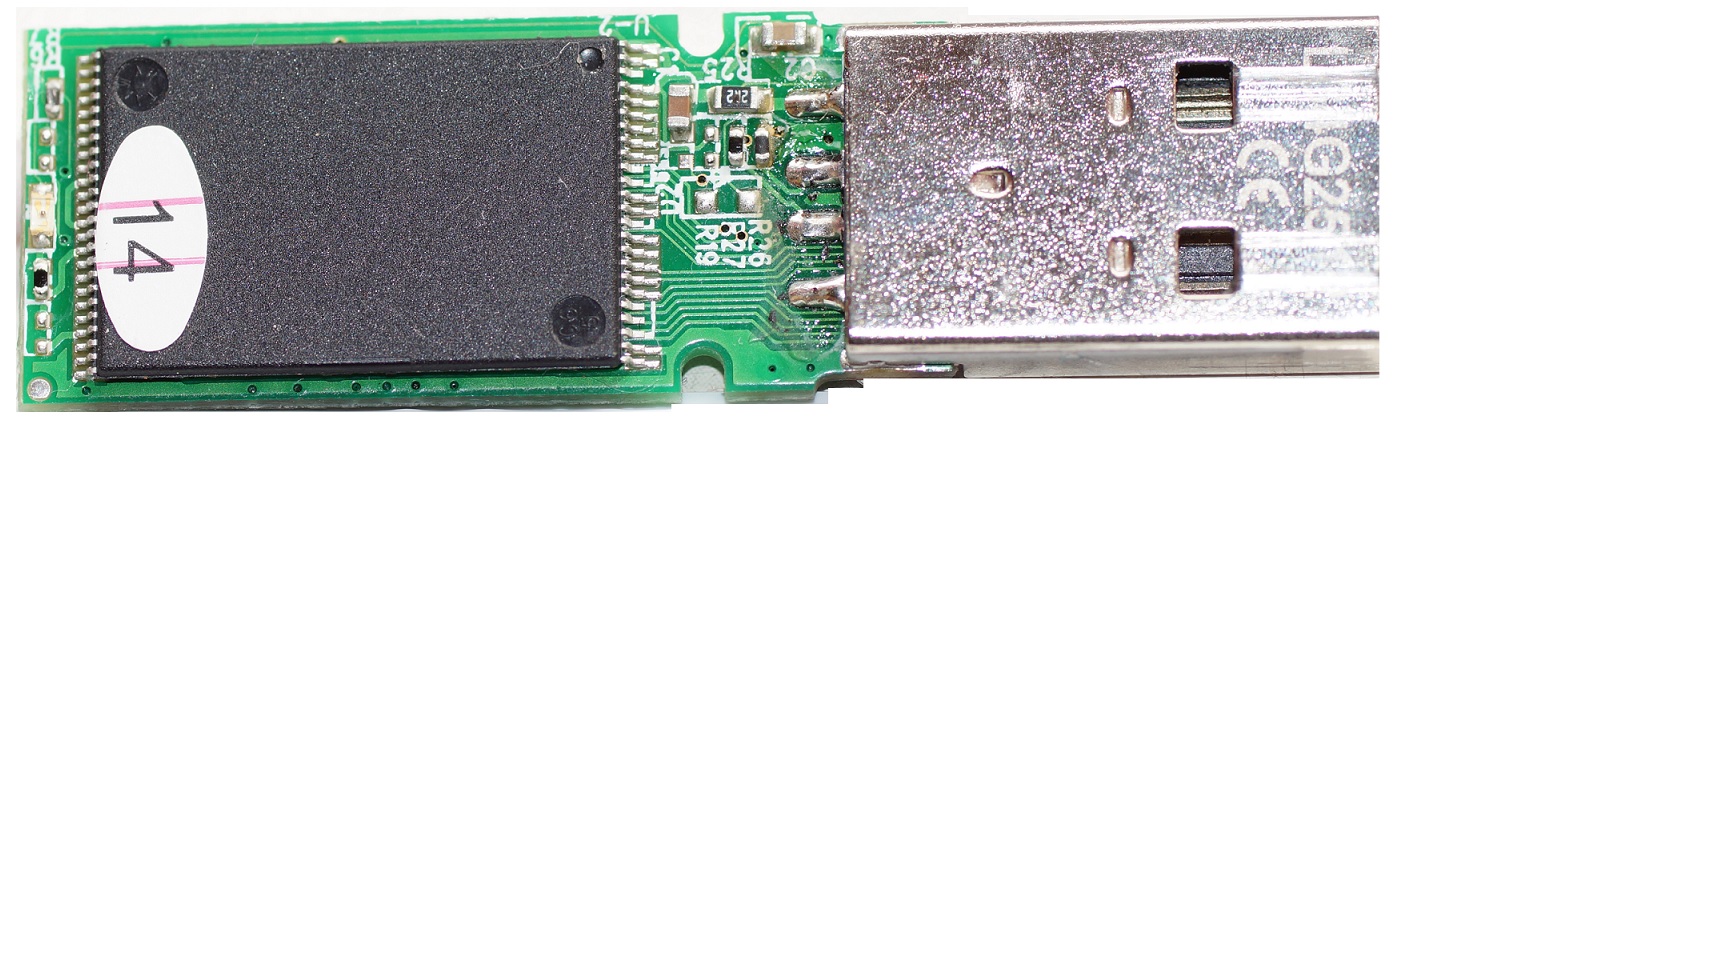 USB Stick blinkt komisch und will nicht mehr? - Mikrocontroller.net